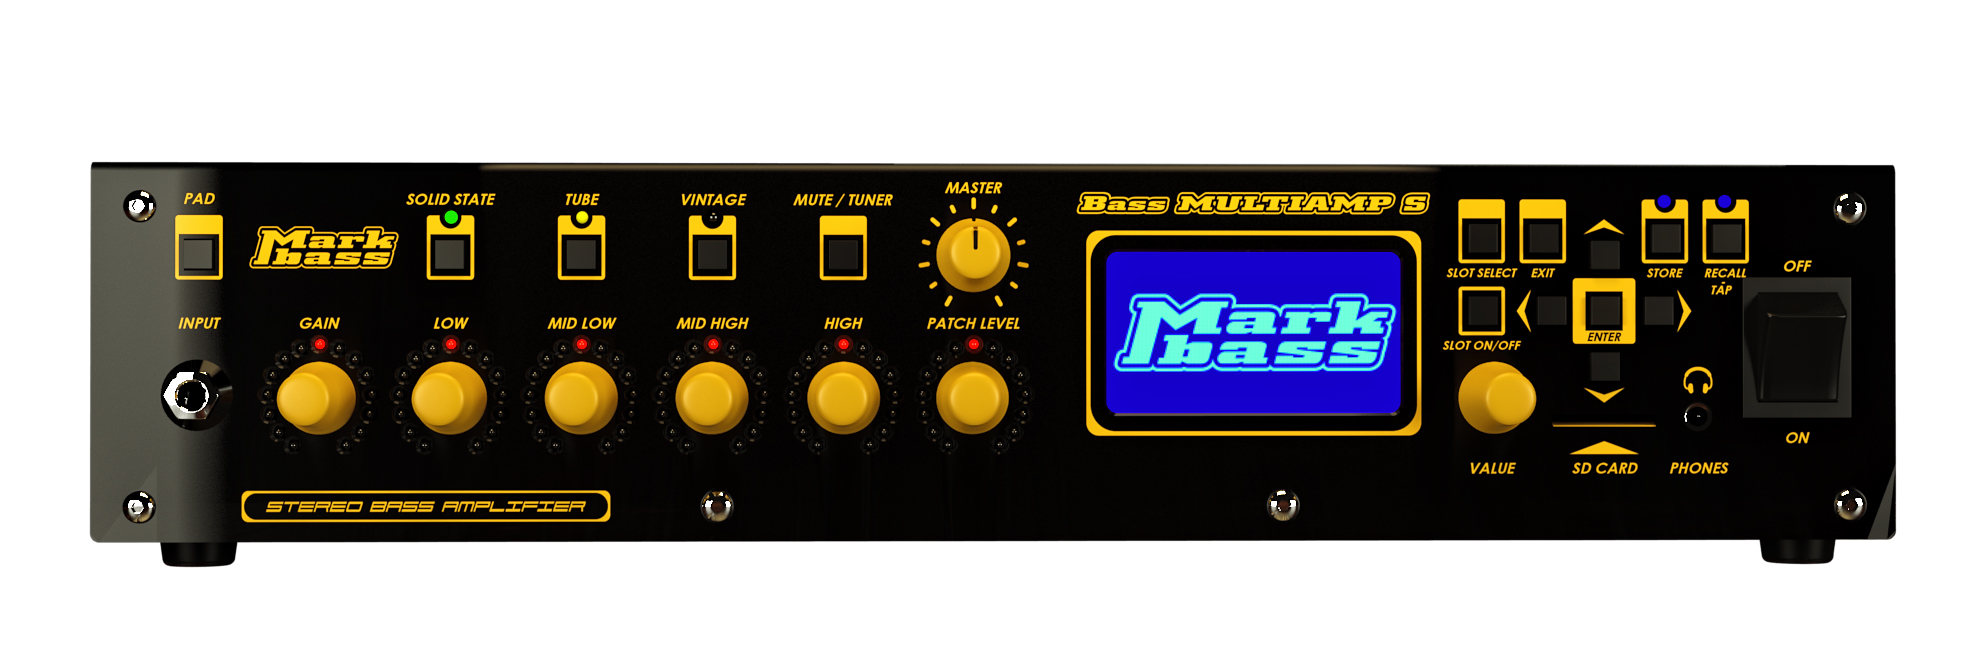 Markbass Bass Multiamp S 2015 Stereo Bass Amplifier 2x500w 4ohms - Bass Topteil - Variation 1